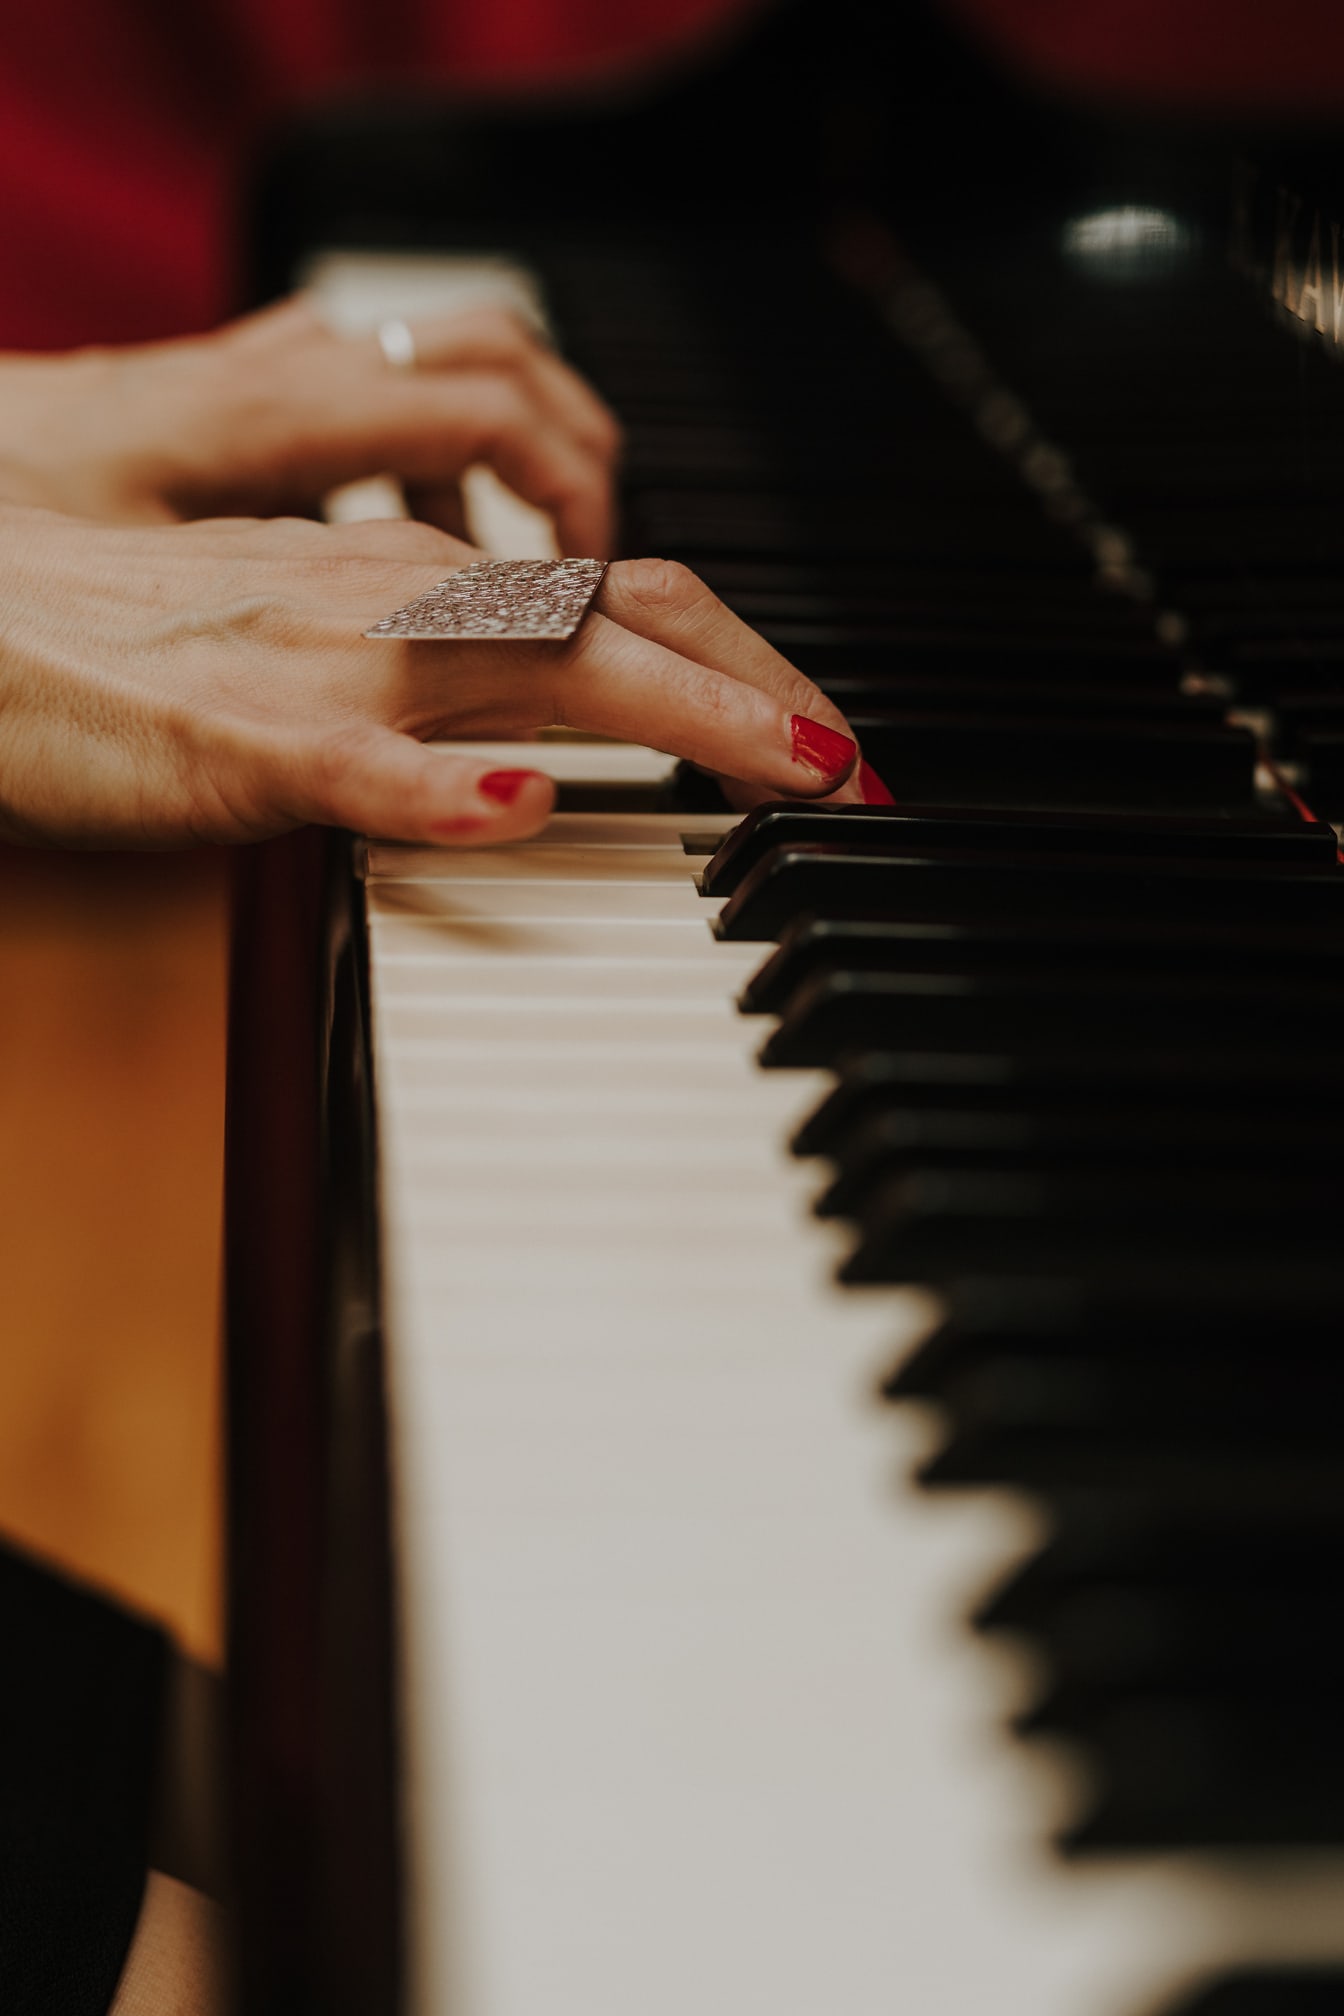 Primer plano de la mano tocando el piano con el esmalte de uñas rojo en los dedos